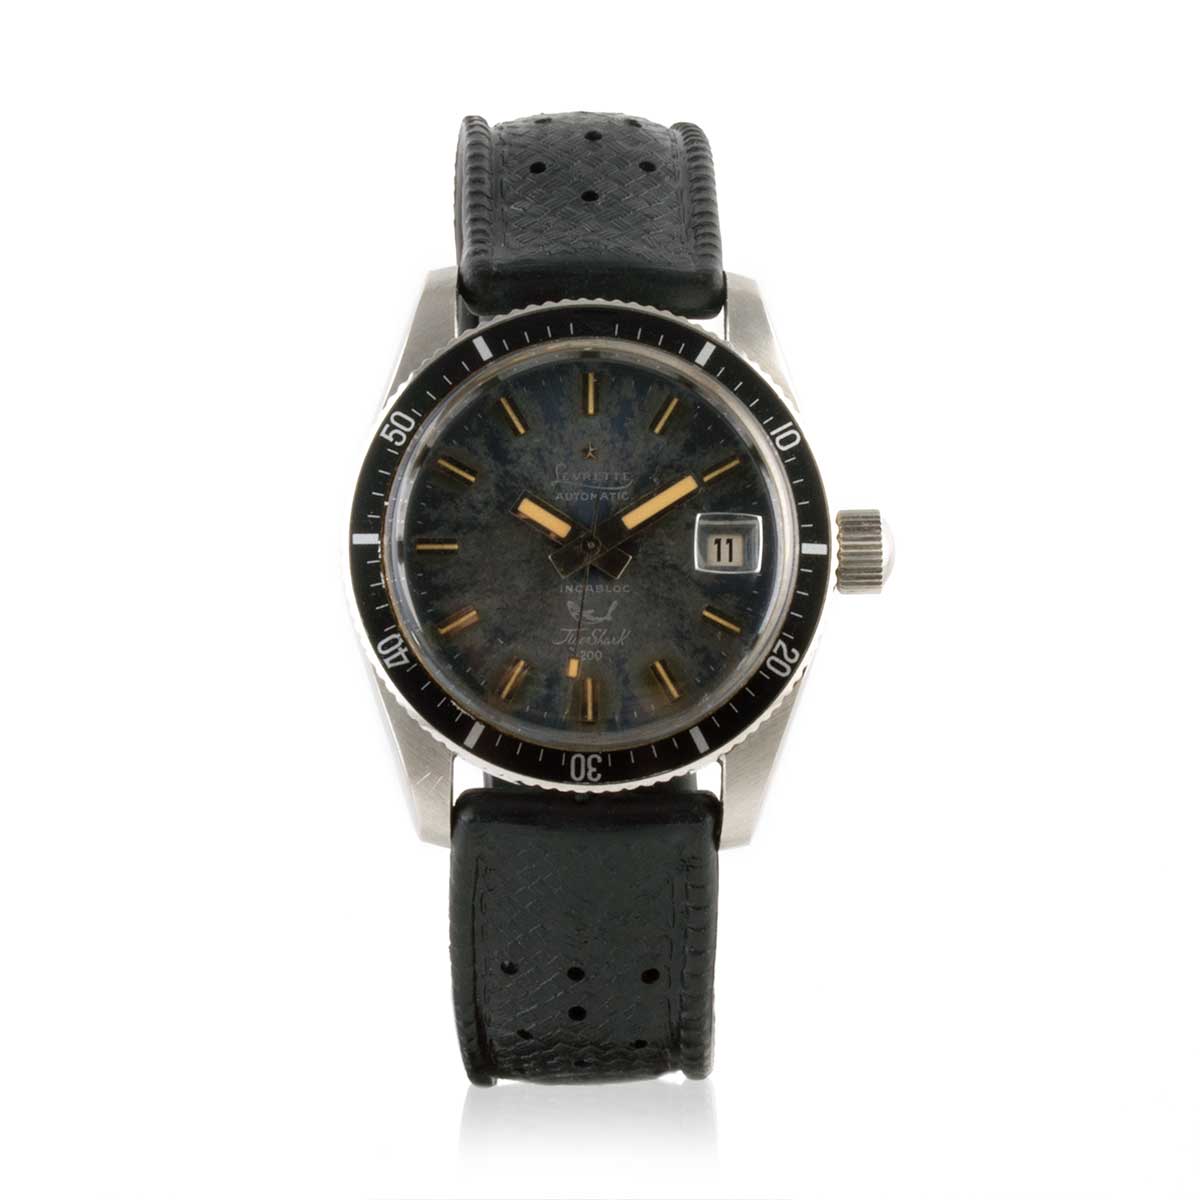 Second-hand watch - Levrette "Tiger Shark" - 1500€